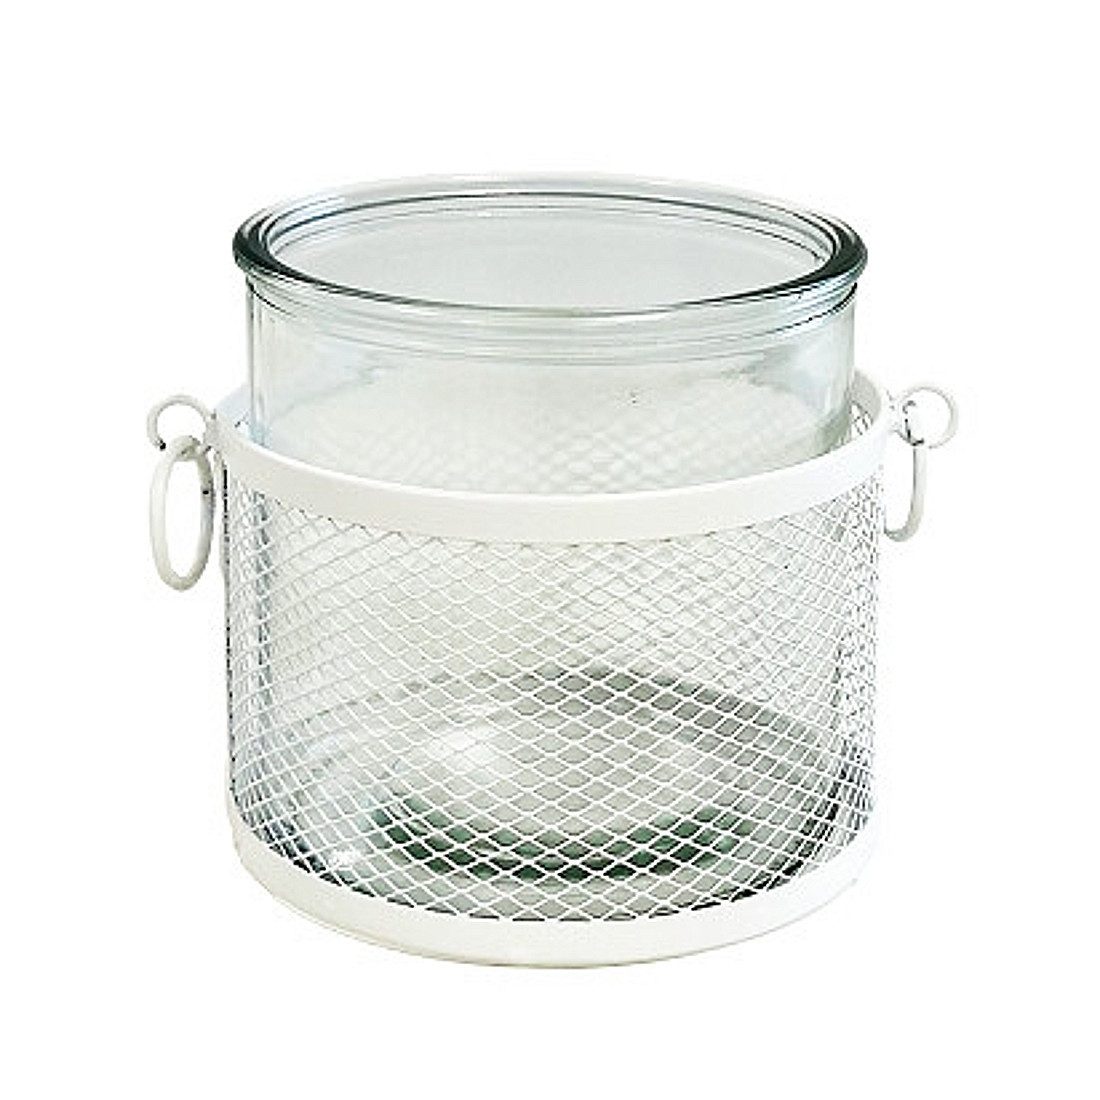 Macosa Home Windlicht Windlicht Glas Metall Weiß 12 cm modern Kerzenhalter (Teelicht-Halter Kerzenständer, Glaswindlicht Tisch-Dekoration), Teelichthalter Deko Metallwindlicht